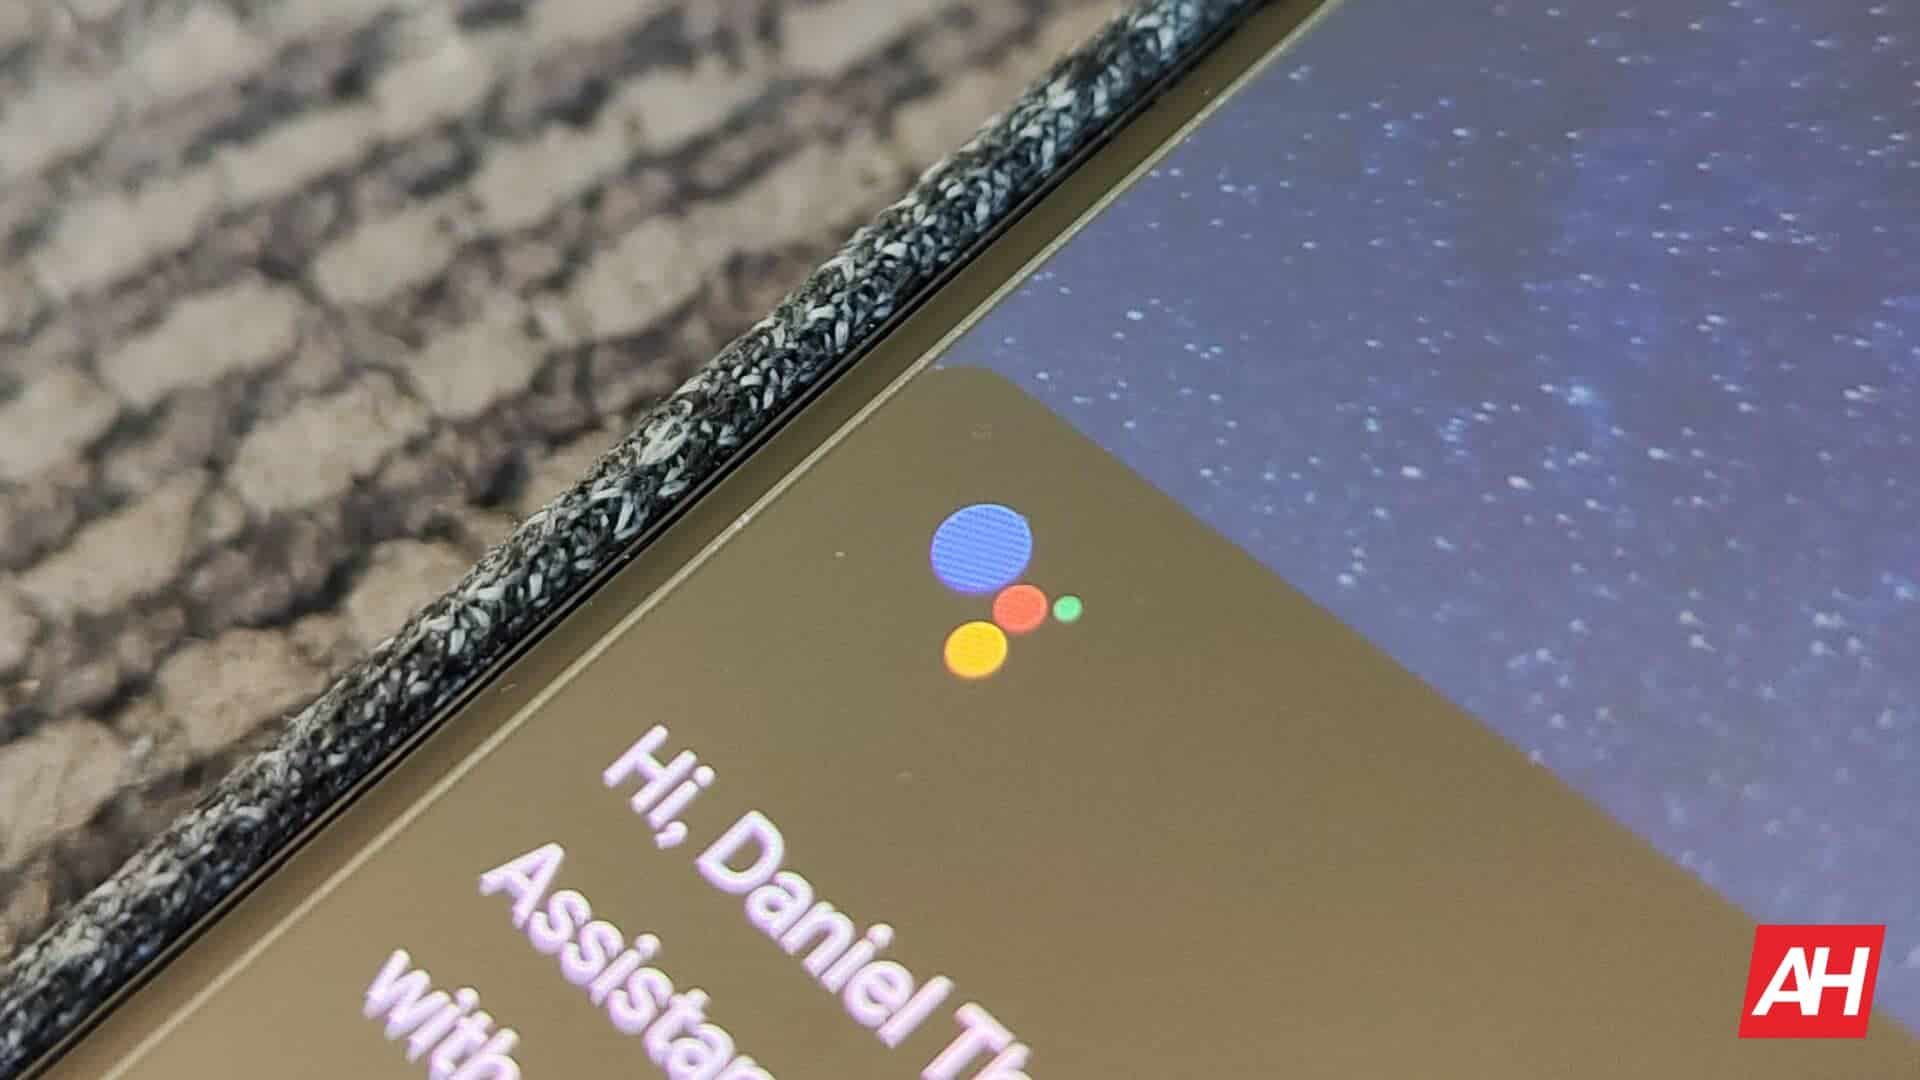 Ваш Google Assistant Меню изменилось, появилась новая функция общения